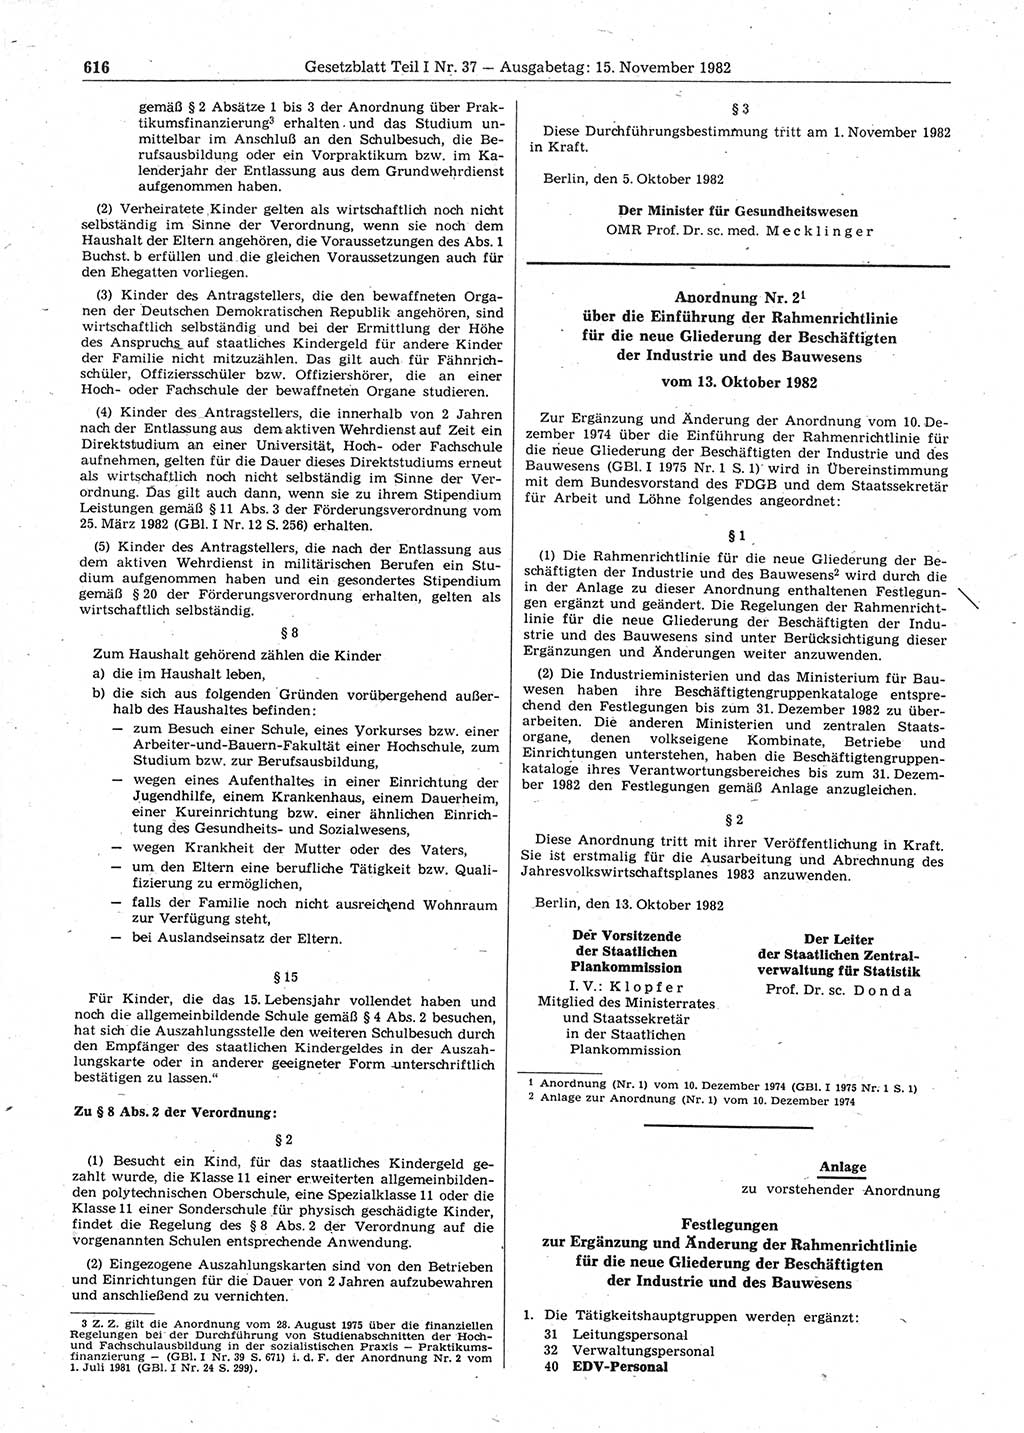 Gesetzblatt (GBl.) der Deutschen Demokratischen Republik (DDR) Teil Ⅰ 1982, Seite 616 (GBl. DDR Ⅰ 1982, S. 616)